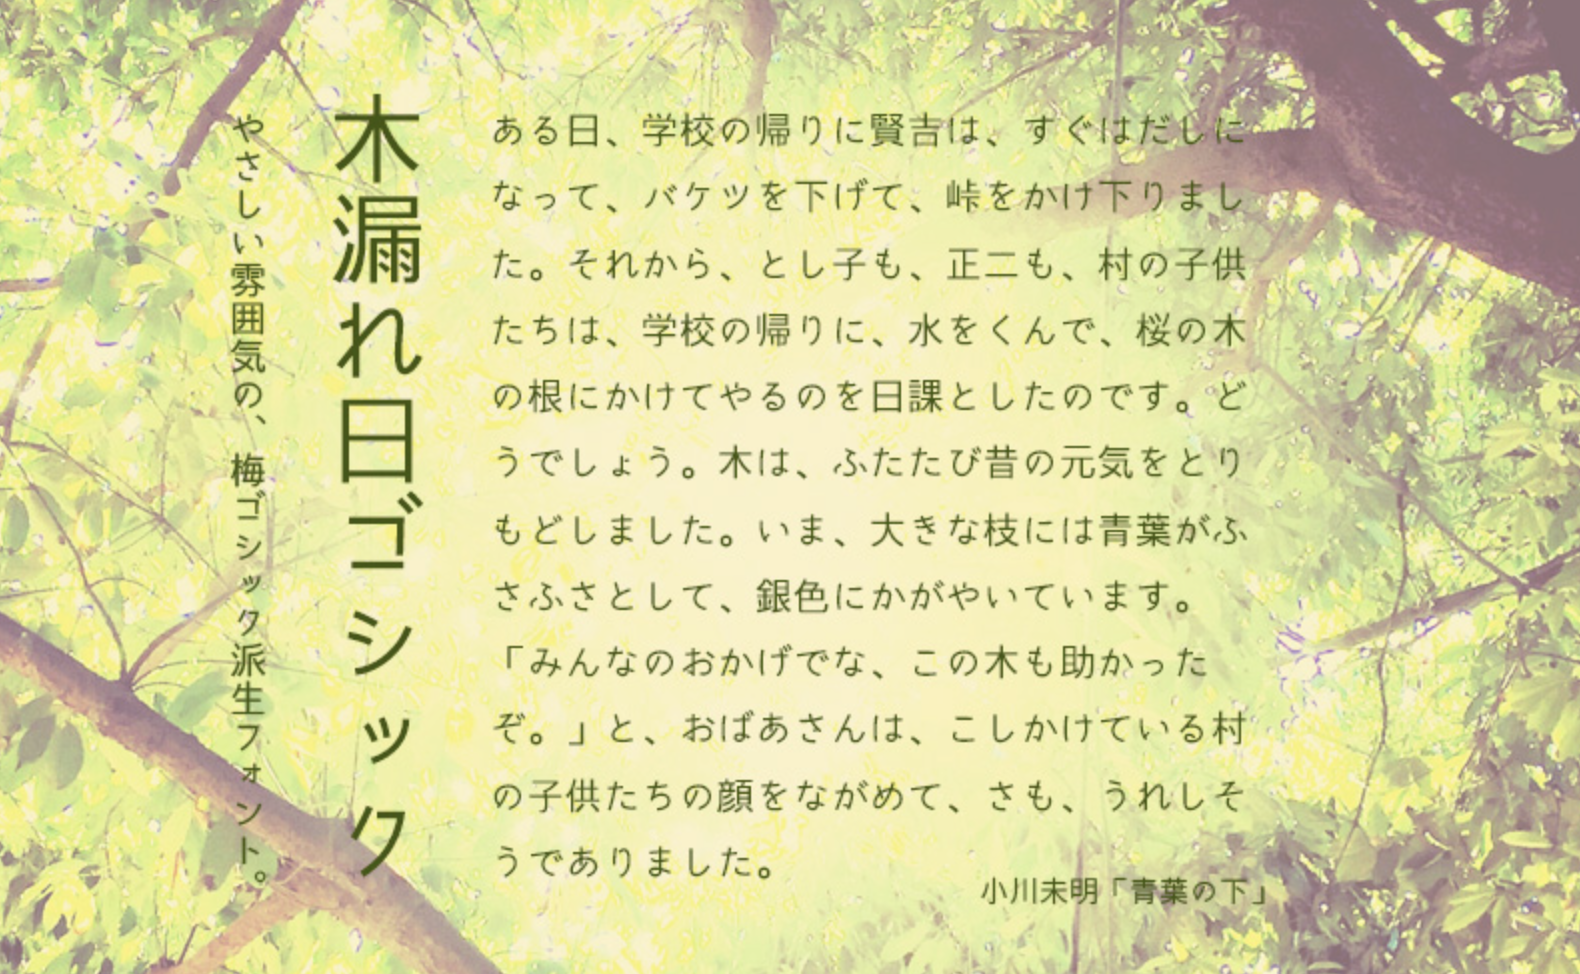 木漏れ日ゴシック 無料で使える日本語フォント投稿サイト フォントフリー